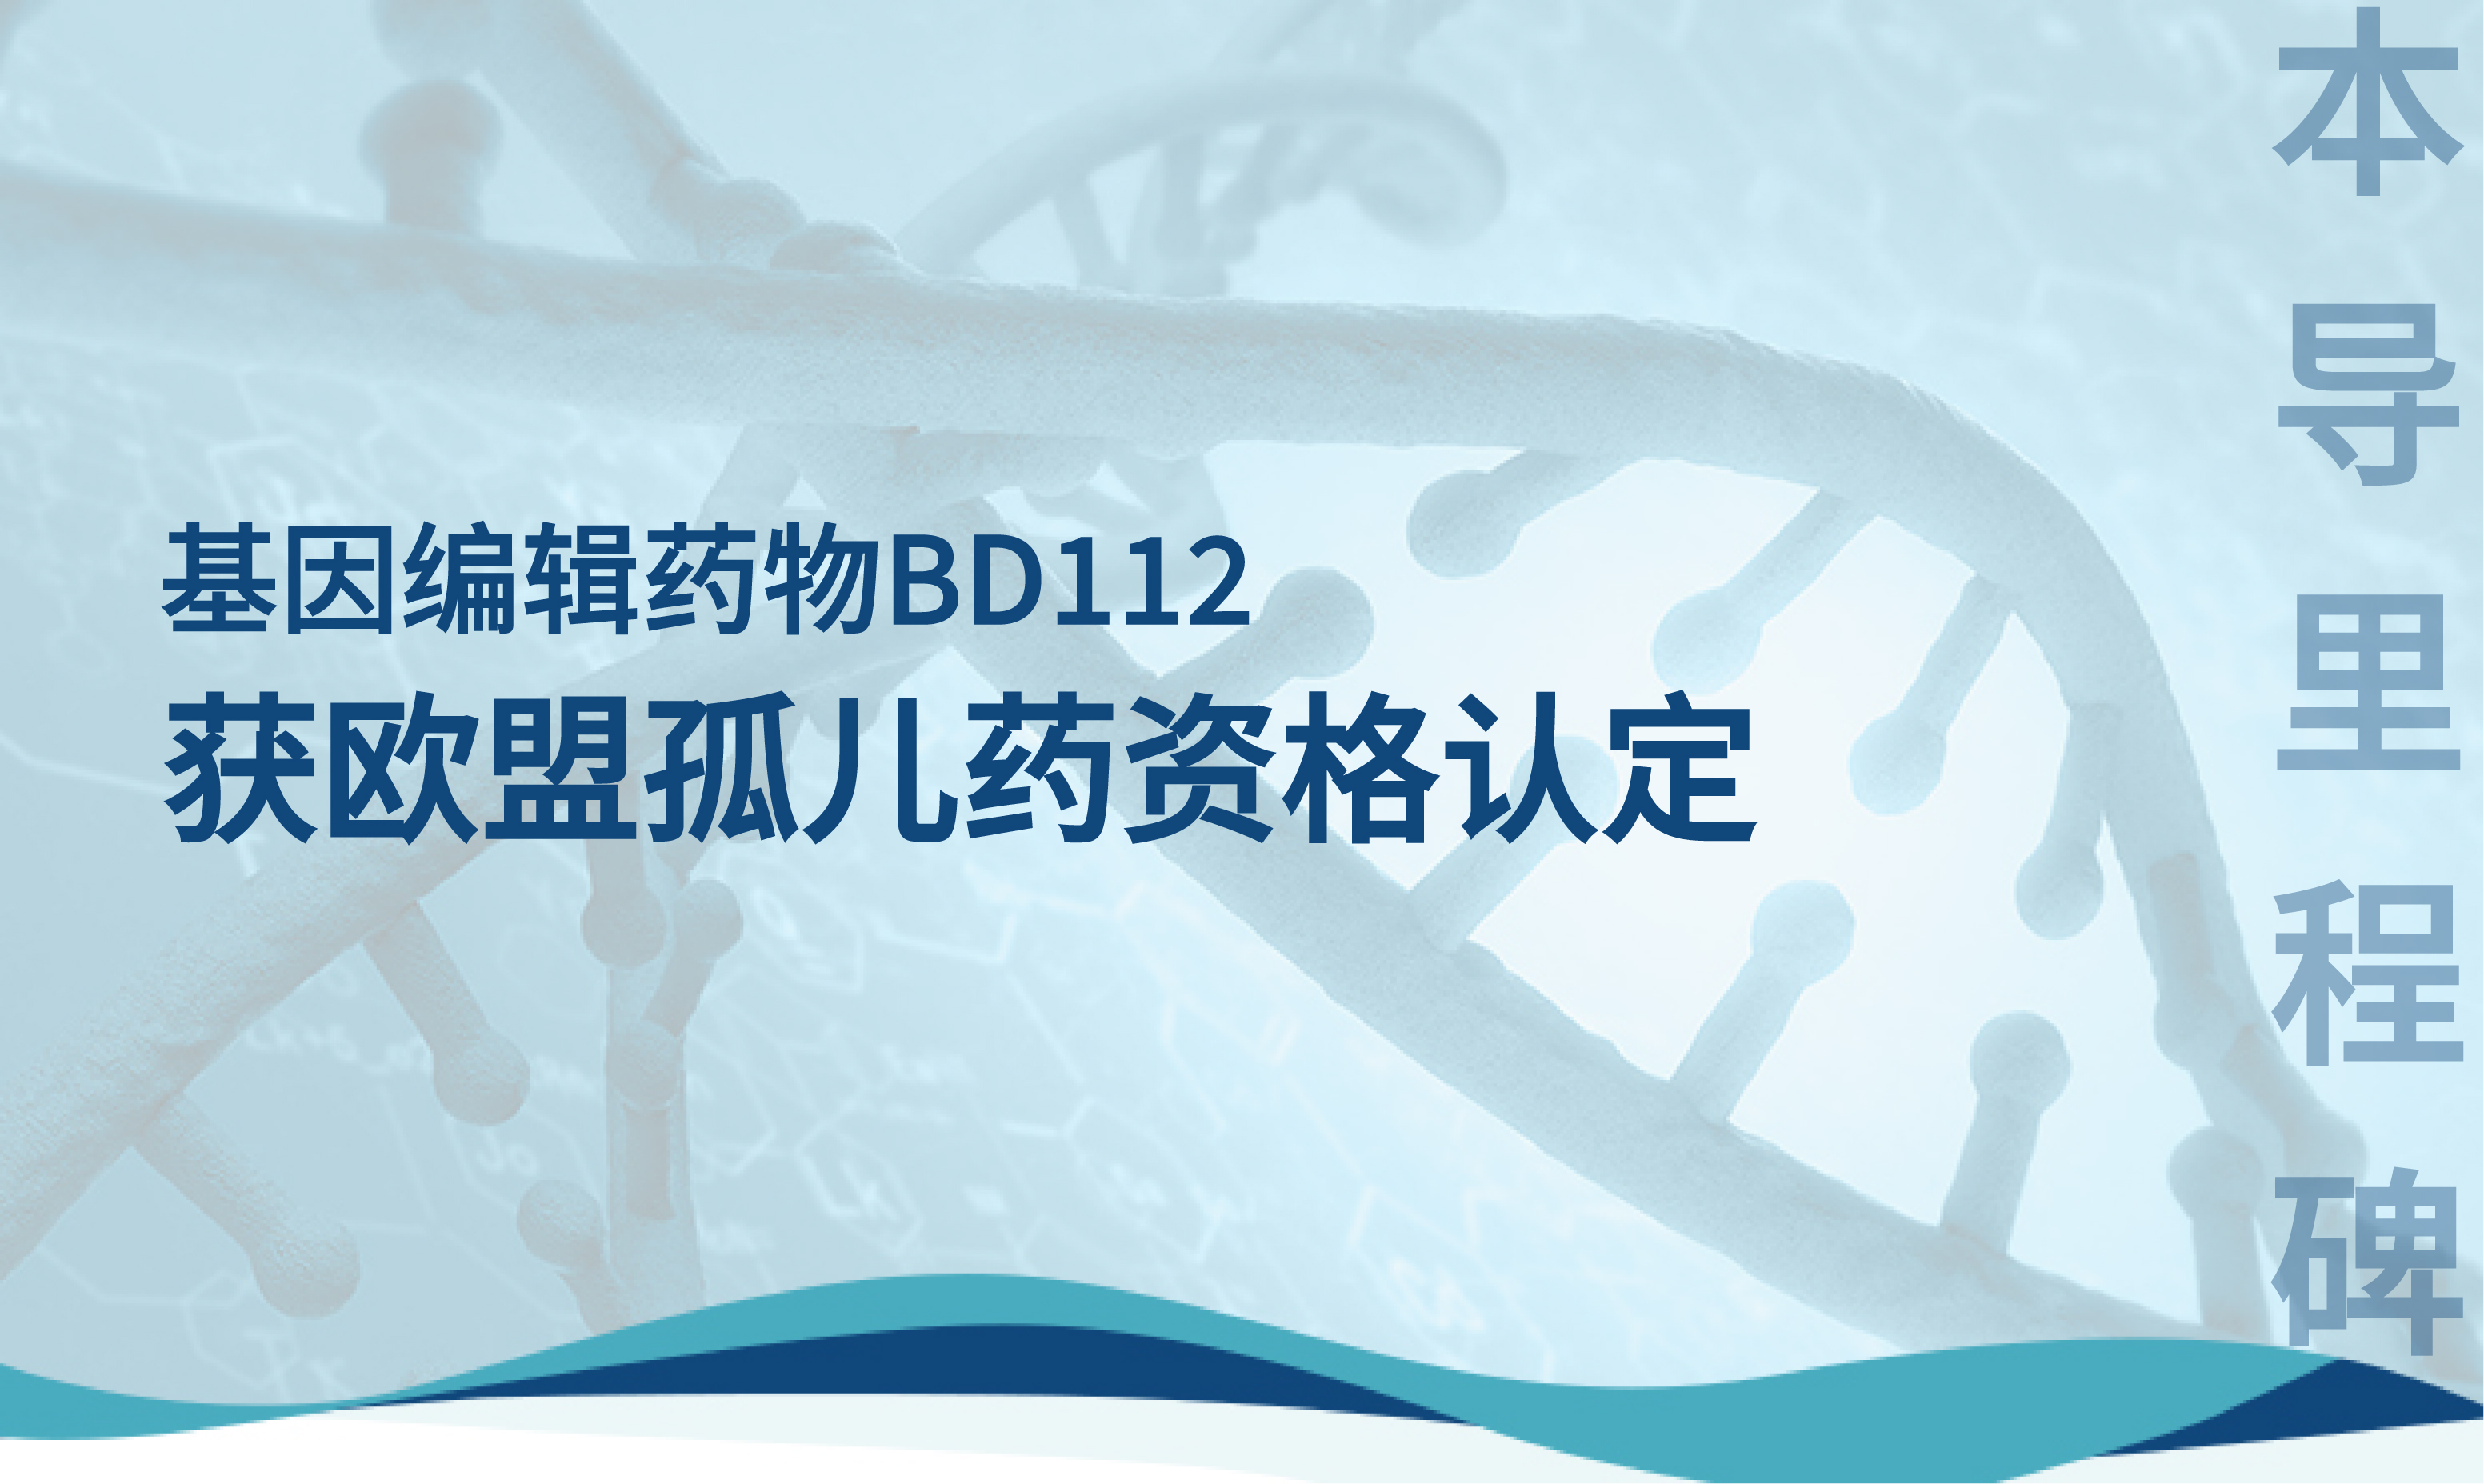 本导里程碑 | 本导基因BD112体内基因编辑获欧盟孤儿药资格认定